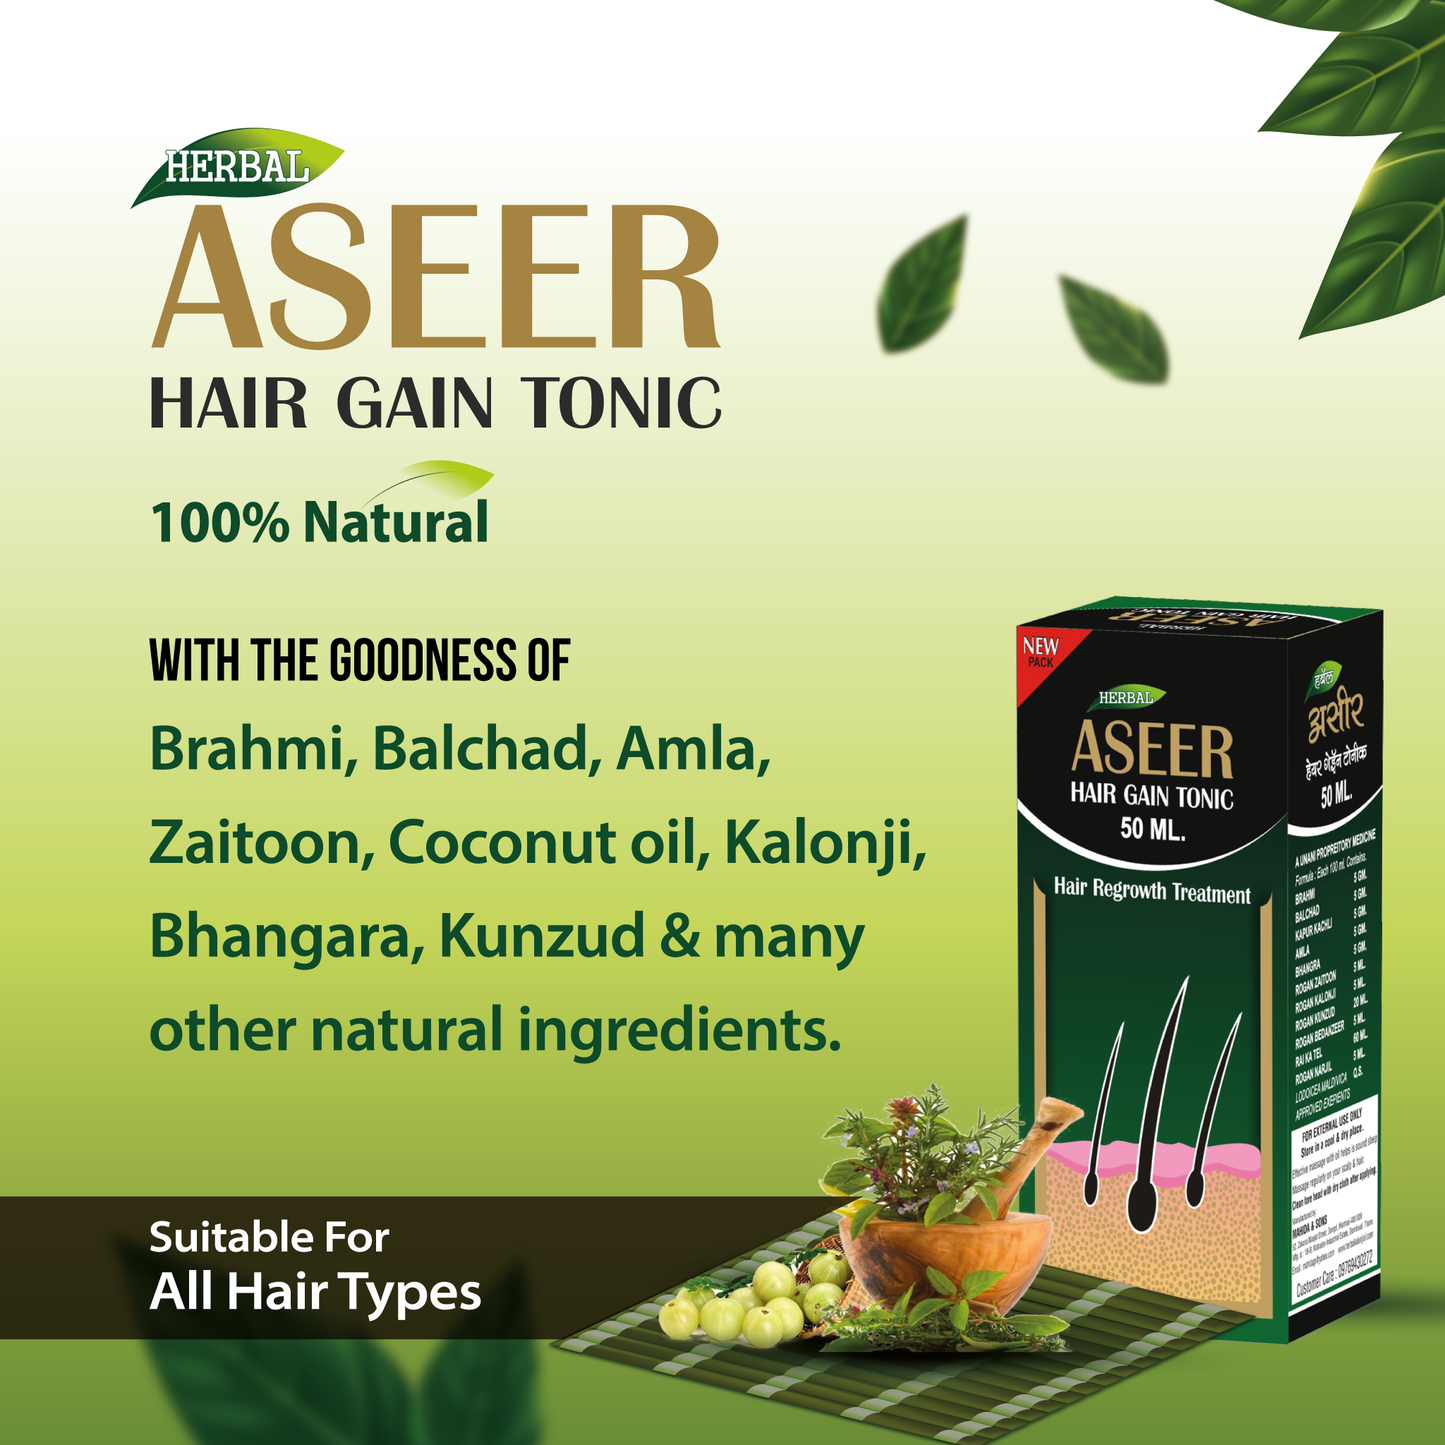 Aseer Hair Gain Tonic Oil